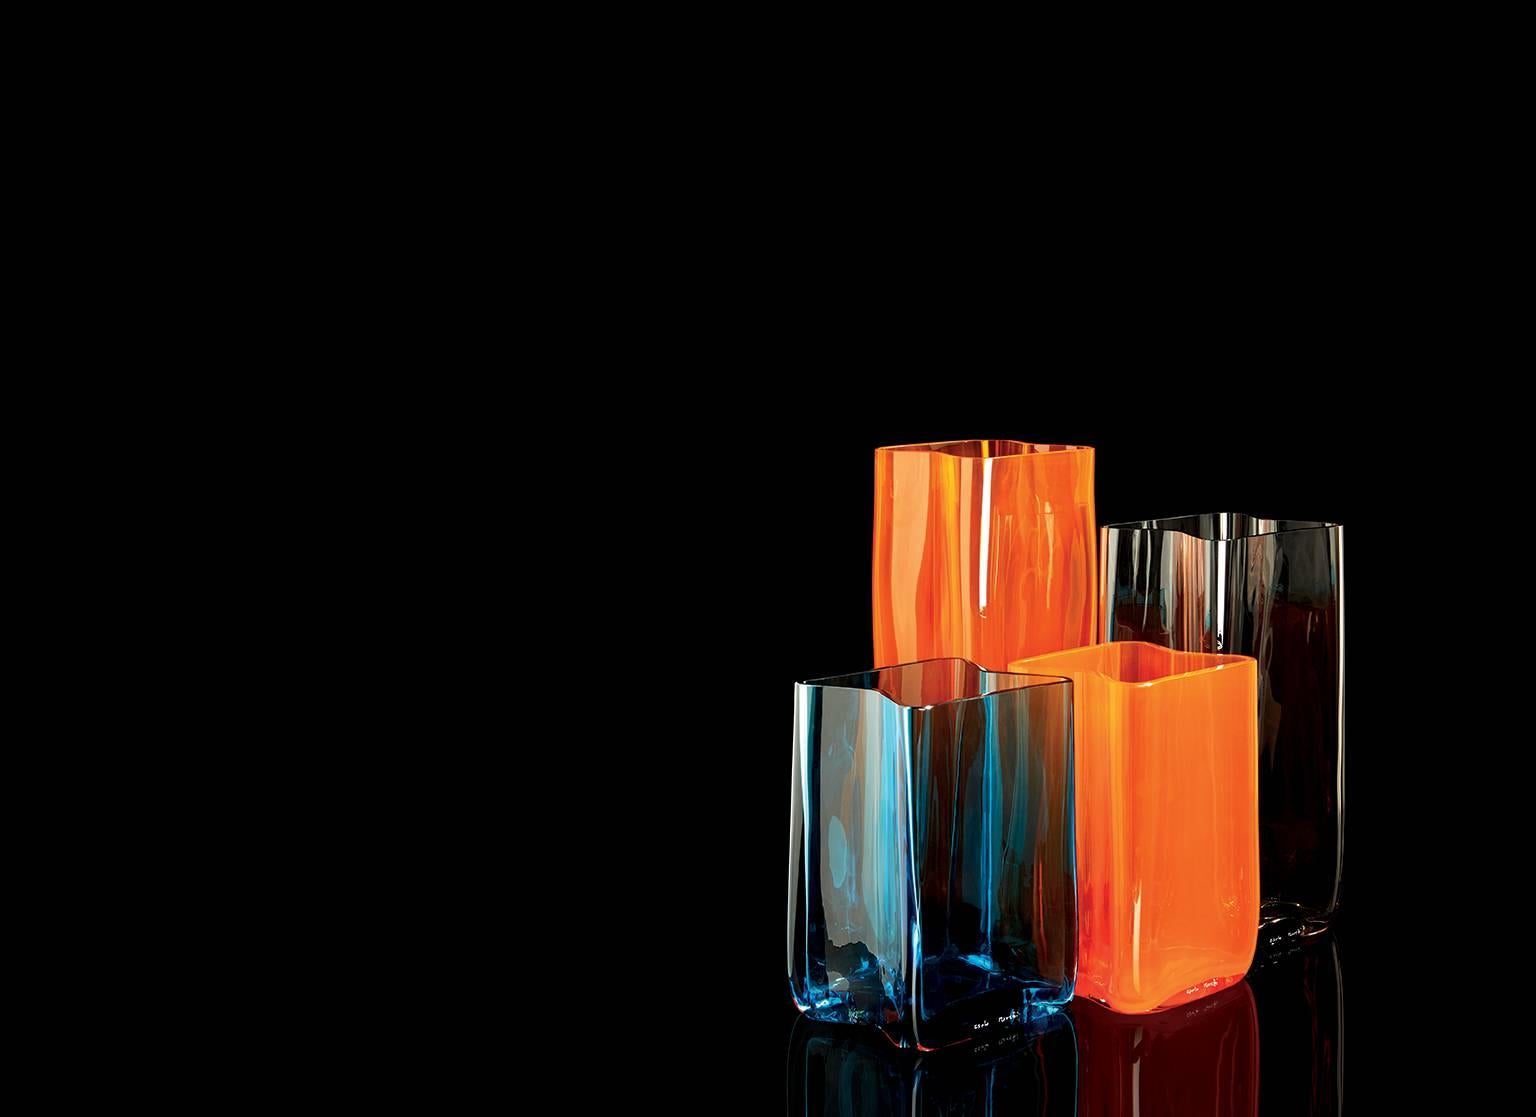 Carlo Moretti Bosco zeitgenössische Vase aus mundgeblasenem Muranoglas in Orange.

Bosco kann mit anderen Bosco Vasen, Größen und Farben, harmonisch kombiniert